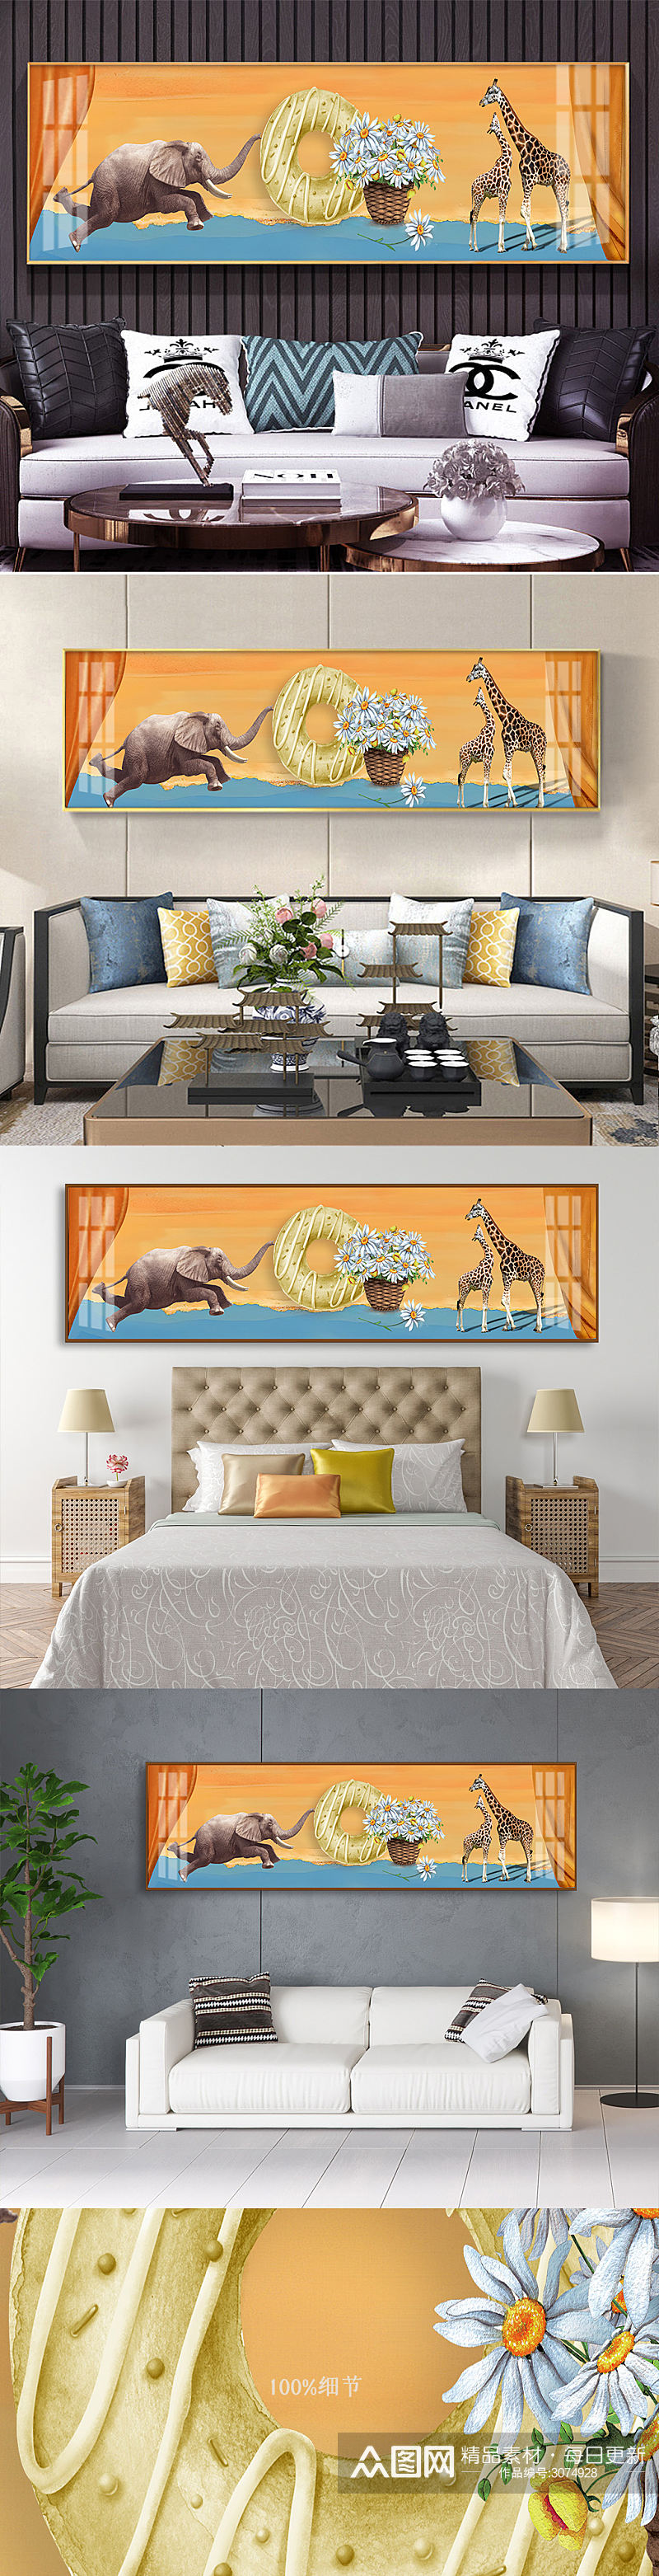 大象长颈鹿床头装饰画素材